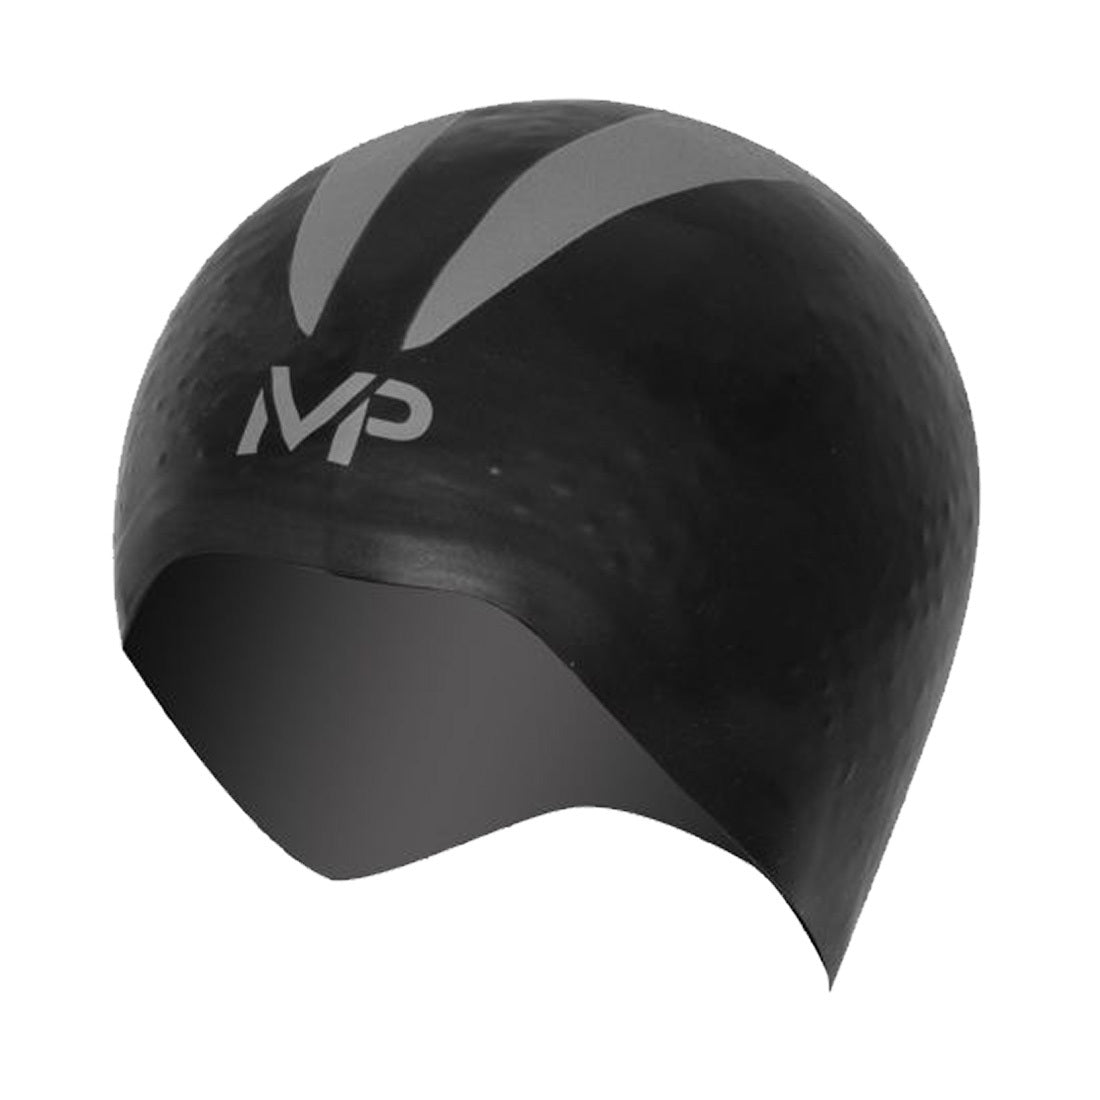 Aqua Sphere MP X-O Swim Cap